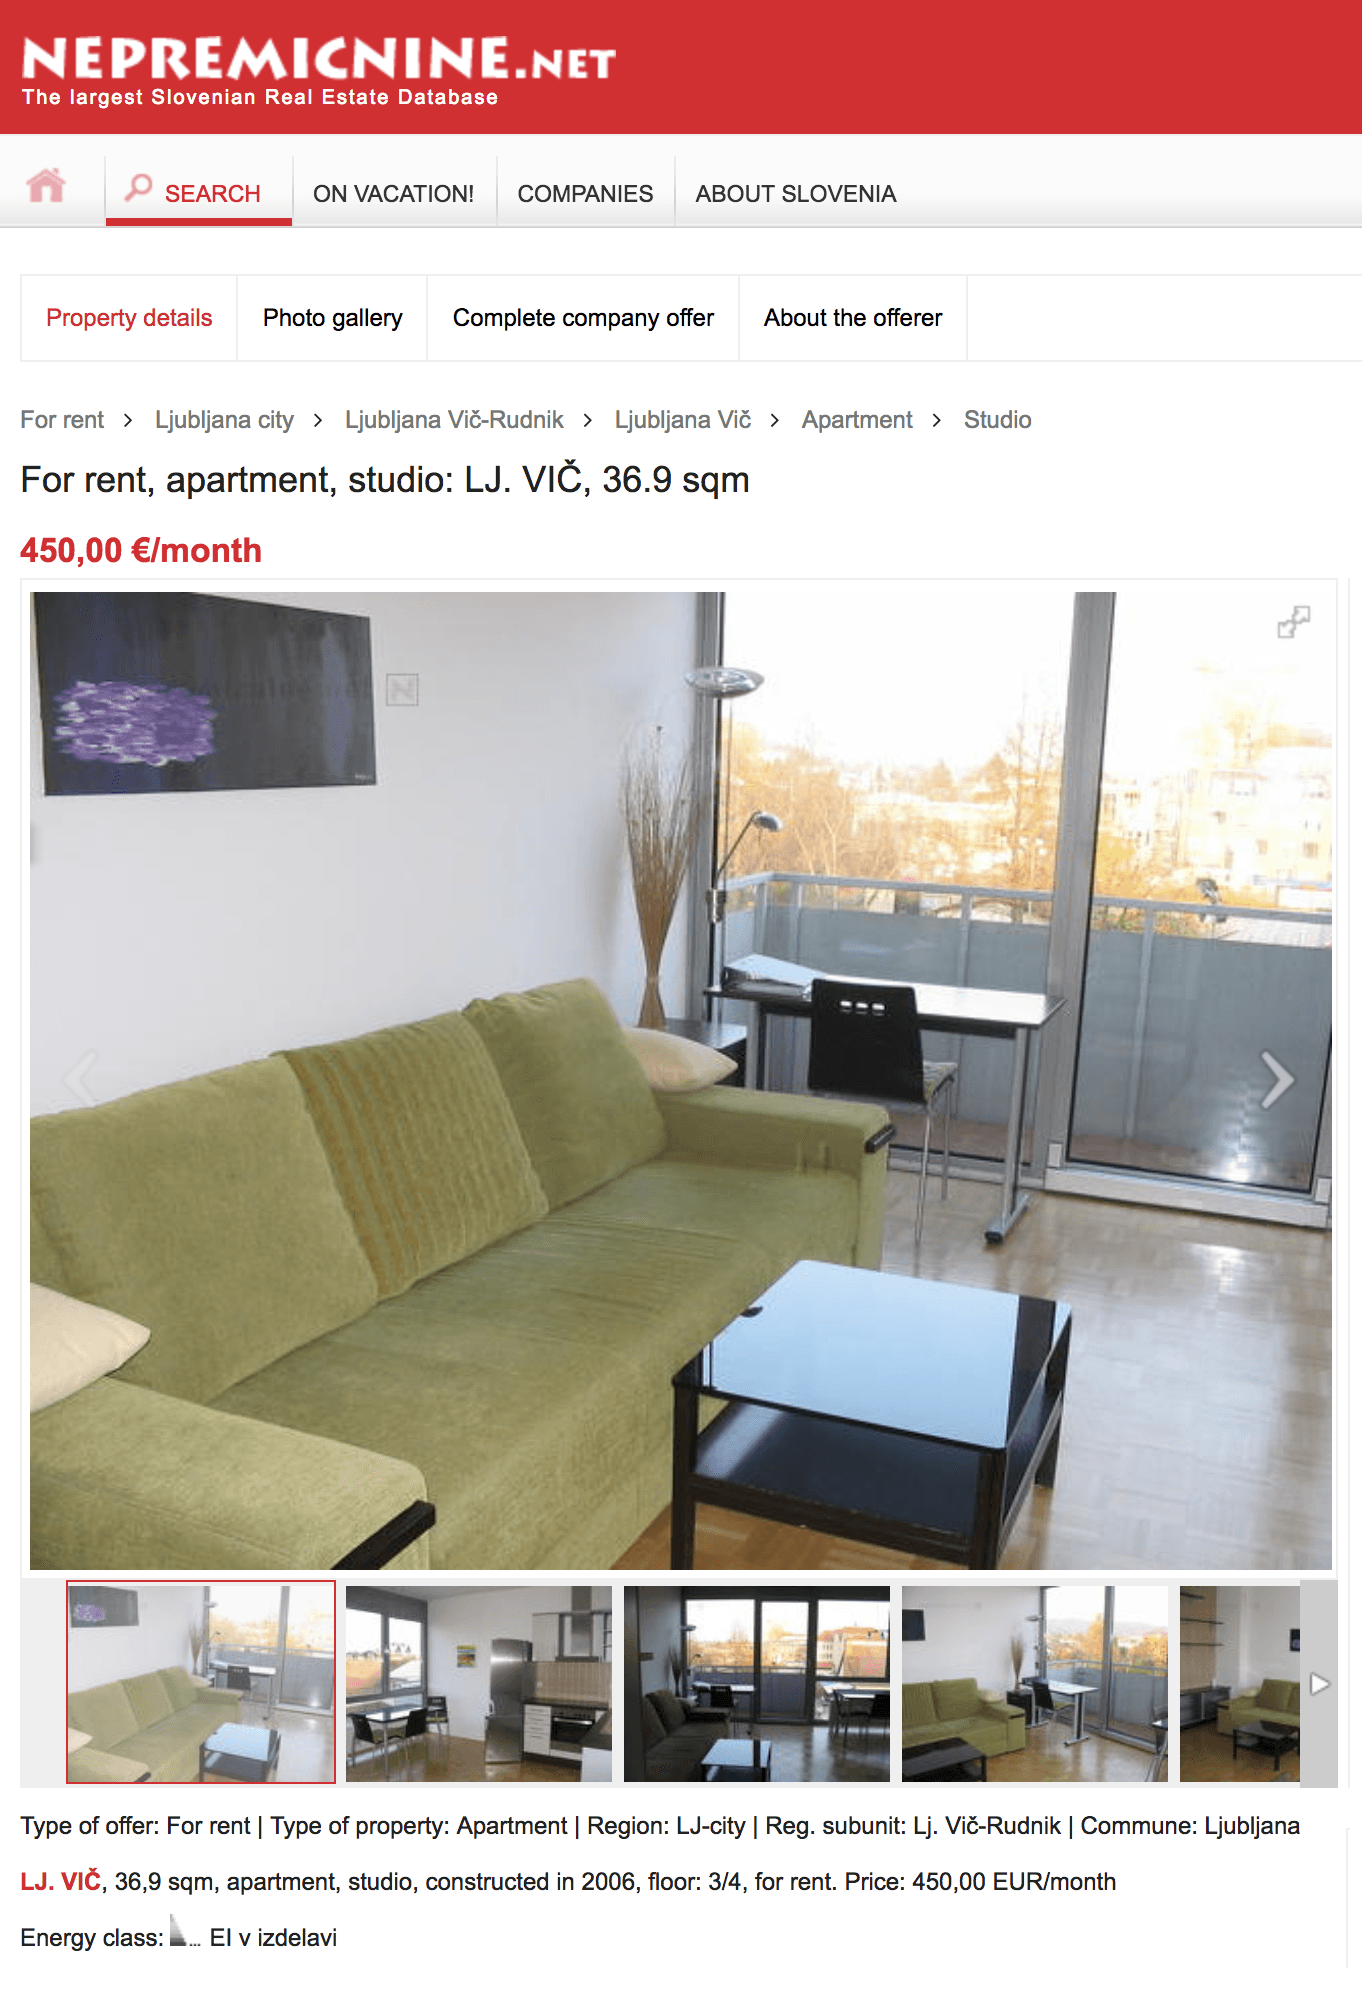 За будинок в передмісті Любляни ми платимо 400 € в місяць   Ось таку студію в Любляні можна зняти за 450 € у місяць   За 750 € можна зняти двокімнатну квартиру в престижному районі Любляни Бежіграде